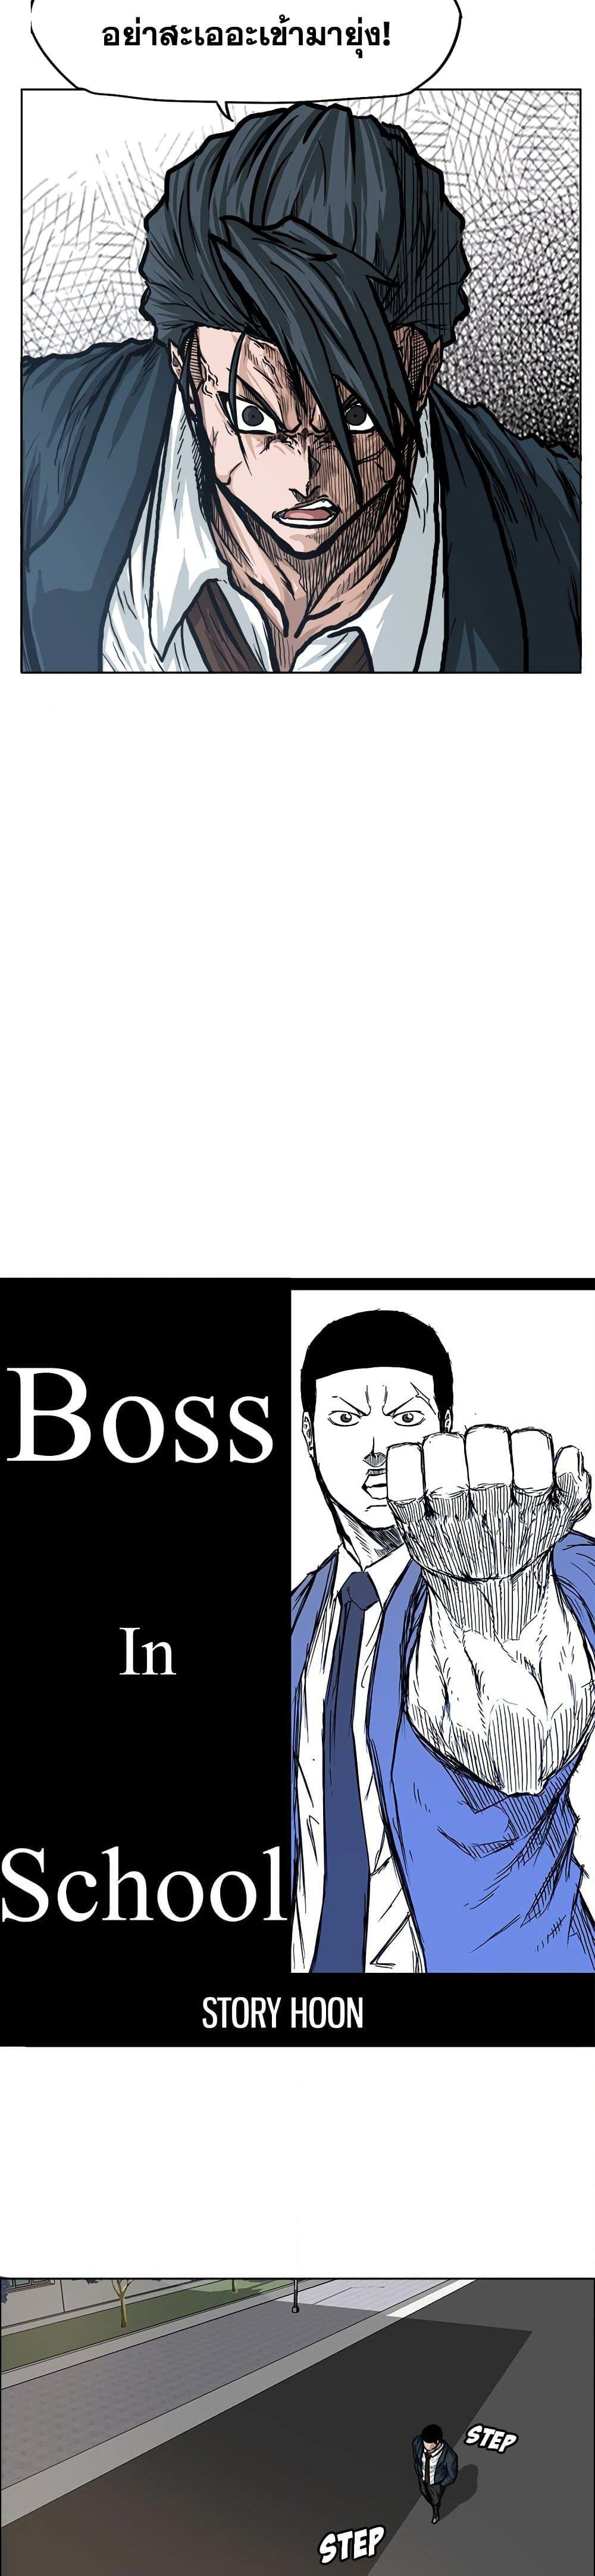 Boss in School 74 11